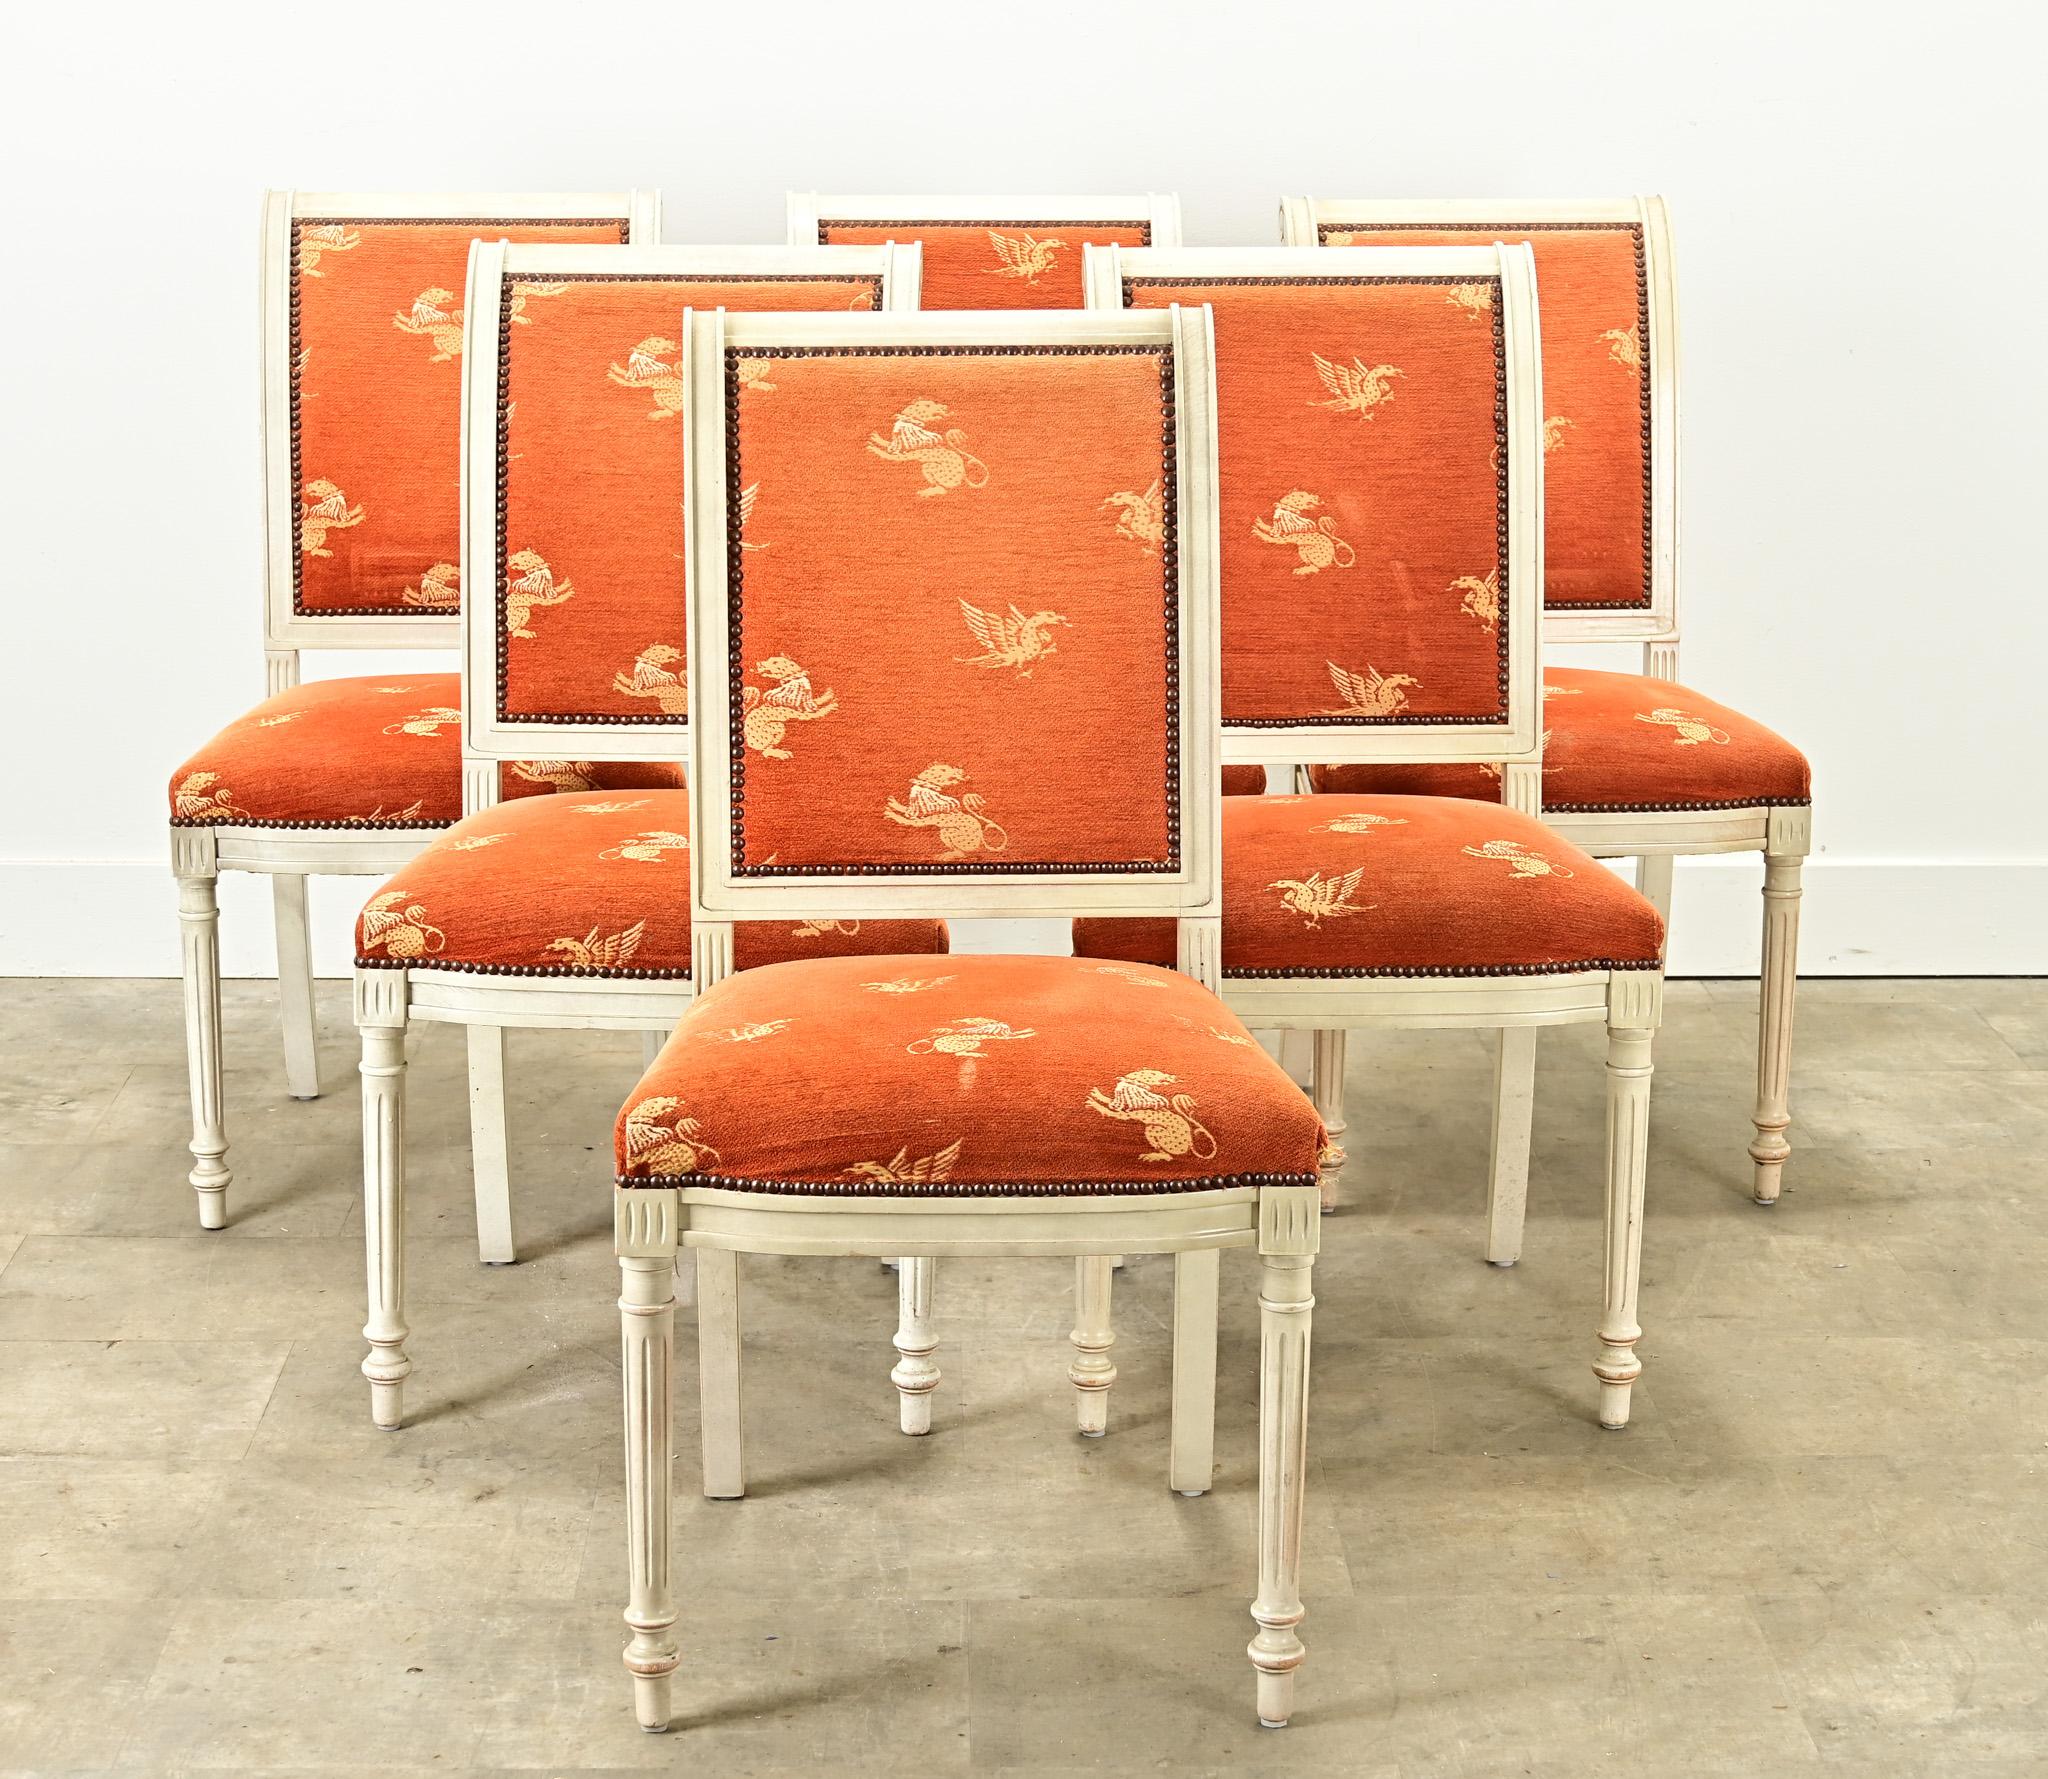 Sechs gepolsterte Esszimmerstühle im Louis-XVI-Stil mit bemalten Rahmen. Diese bequemen Esszimmerstühle haben einen abgenutzten, leuchtend orangefarbenen Stoff mit Greifenmotiven, die von Messingnagelköpfen gehalten werden. Die geschnitzten und